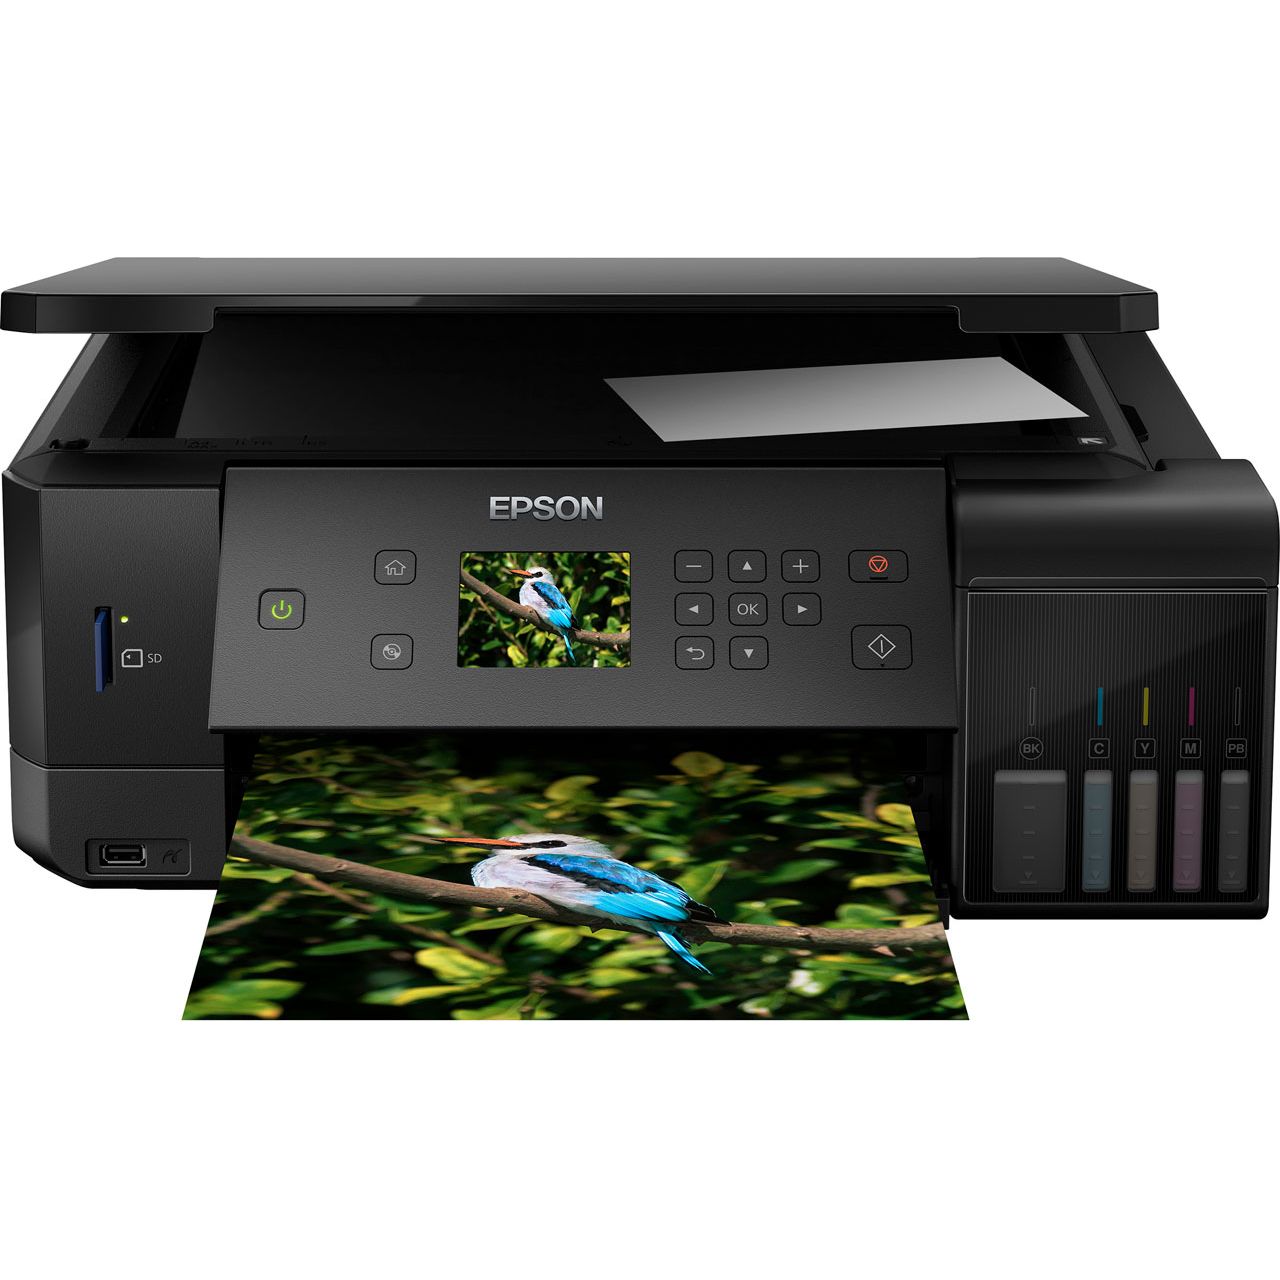 Epson EcoTank ET-7700 Inkjet Printer Review